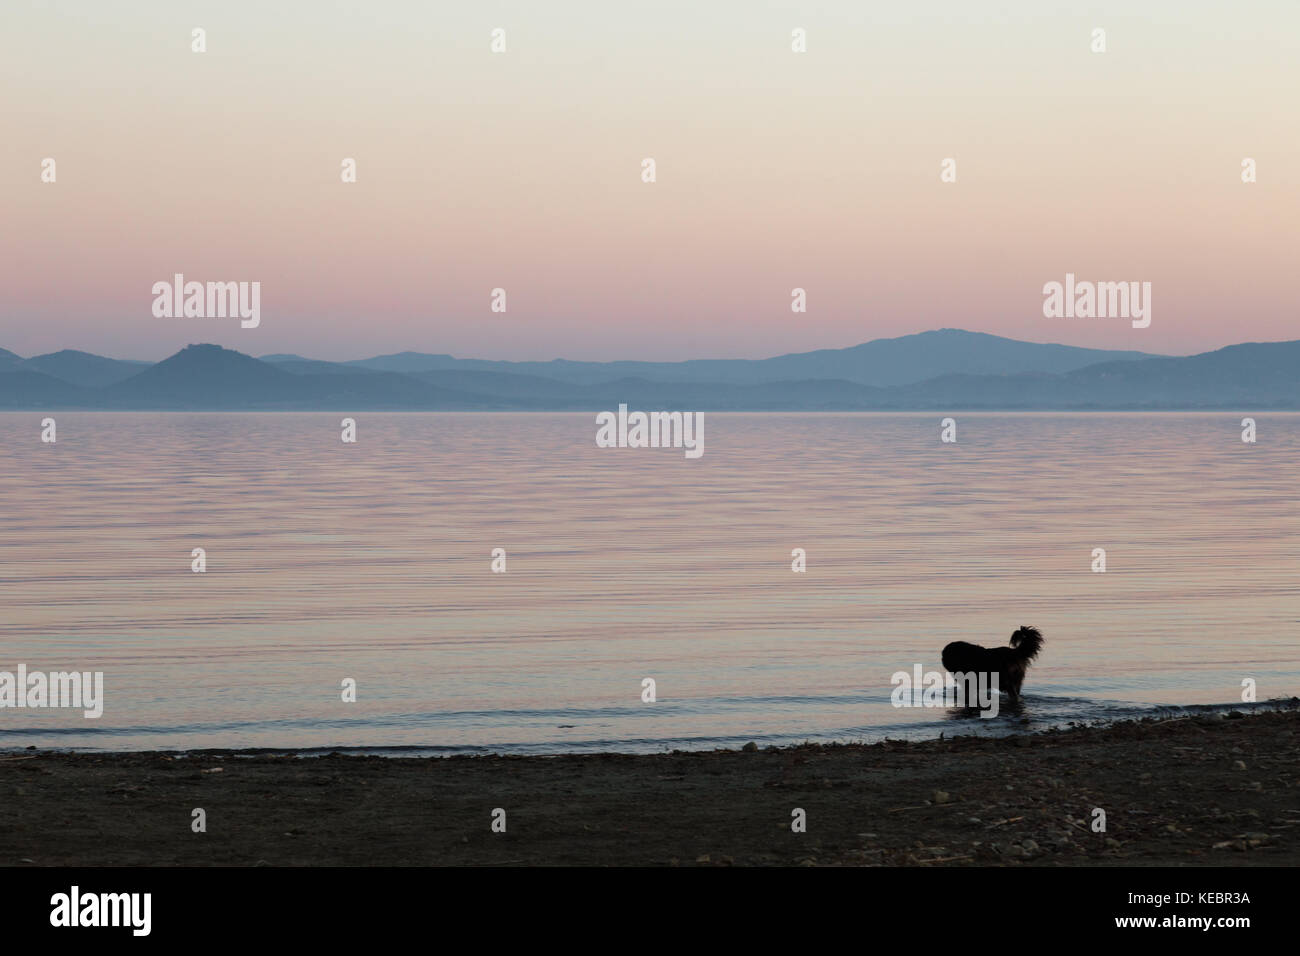 Un chien à prendre un bain dans un lac au crépuscule, avec de beaux tons chauds et doux dans le ciel et l'eau Banque D'Images